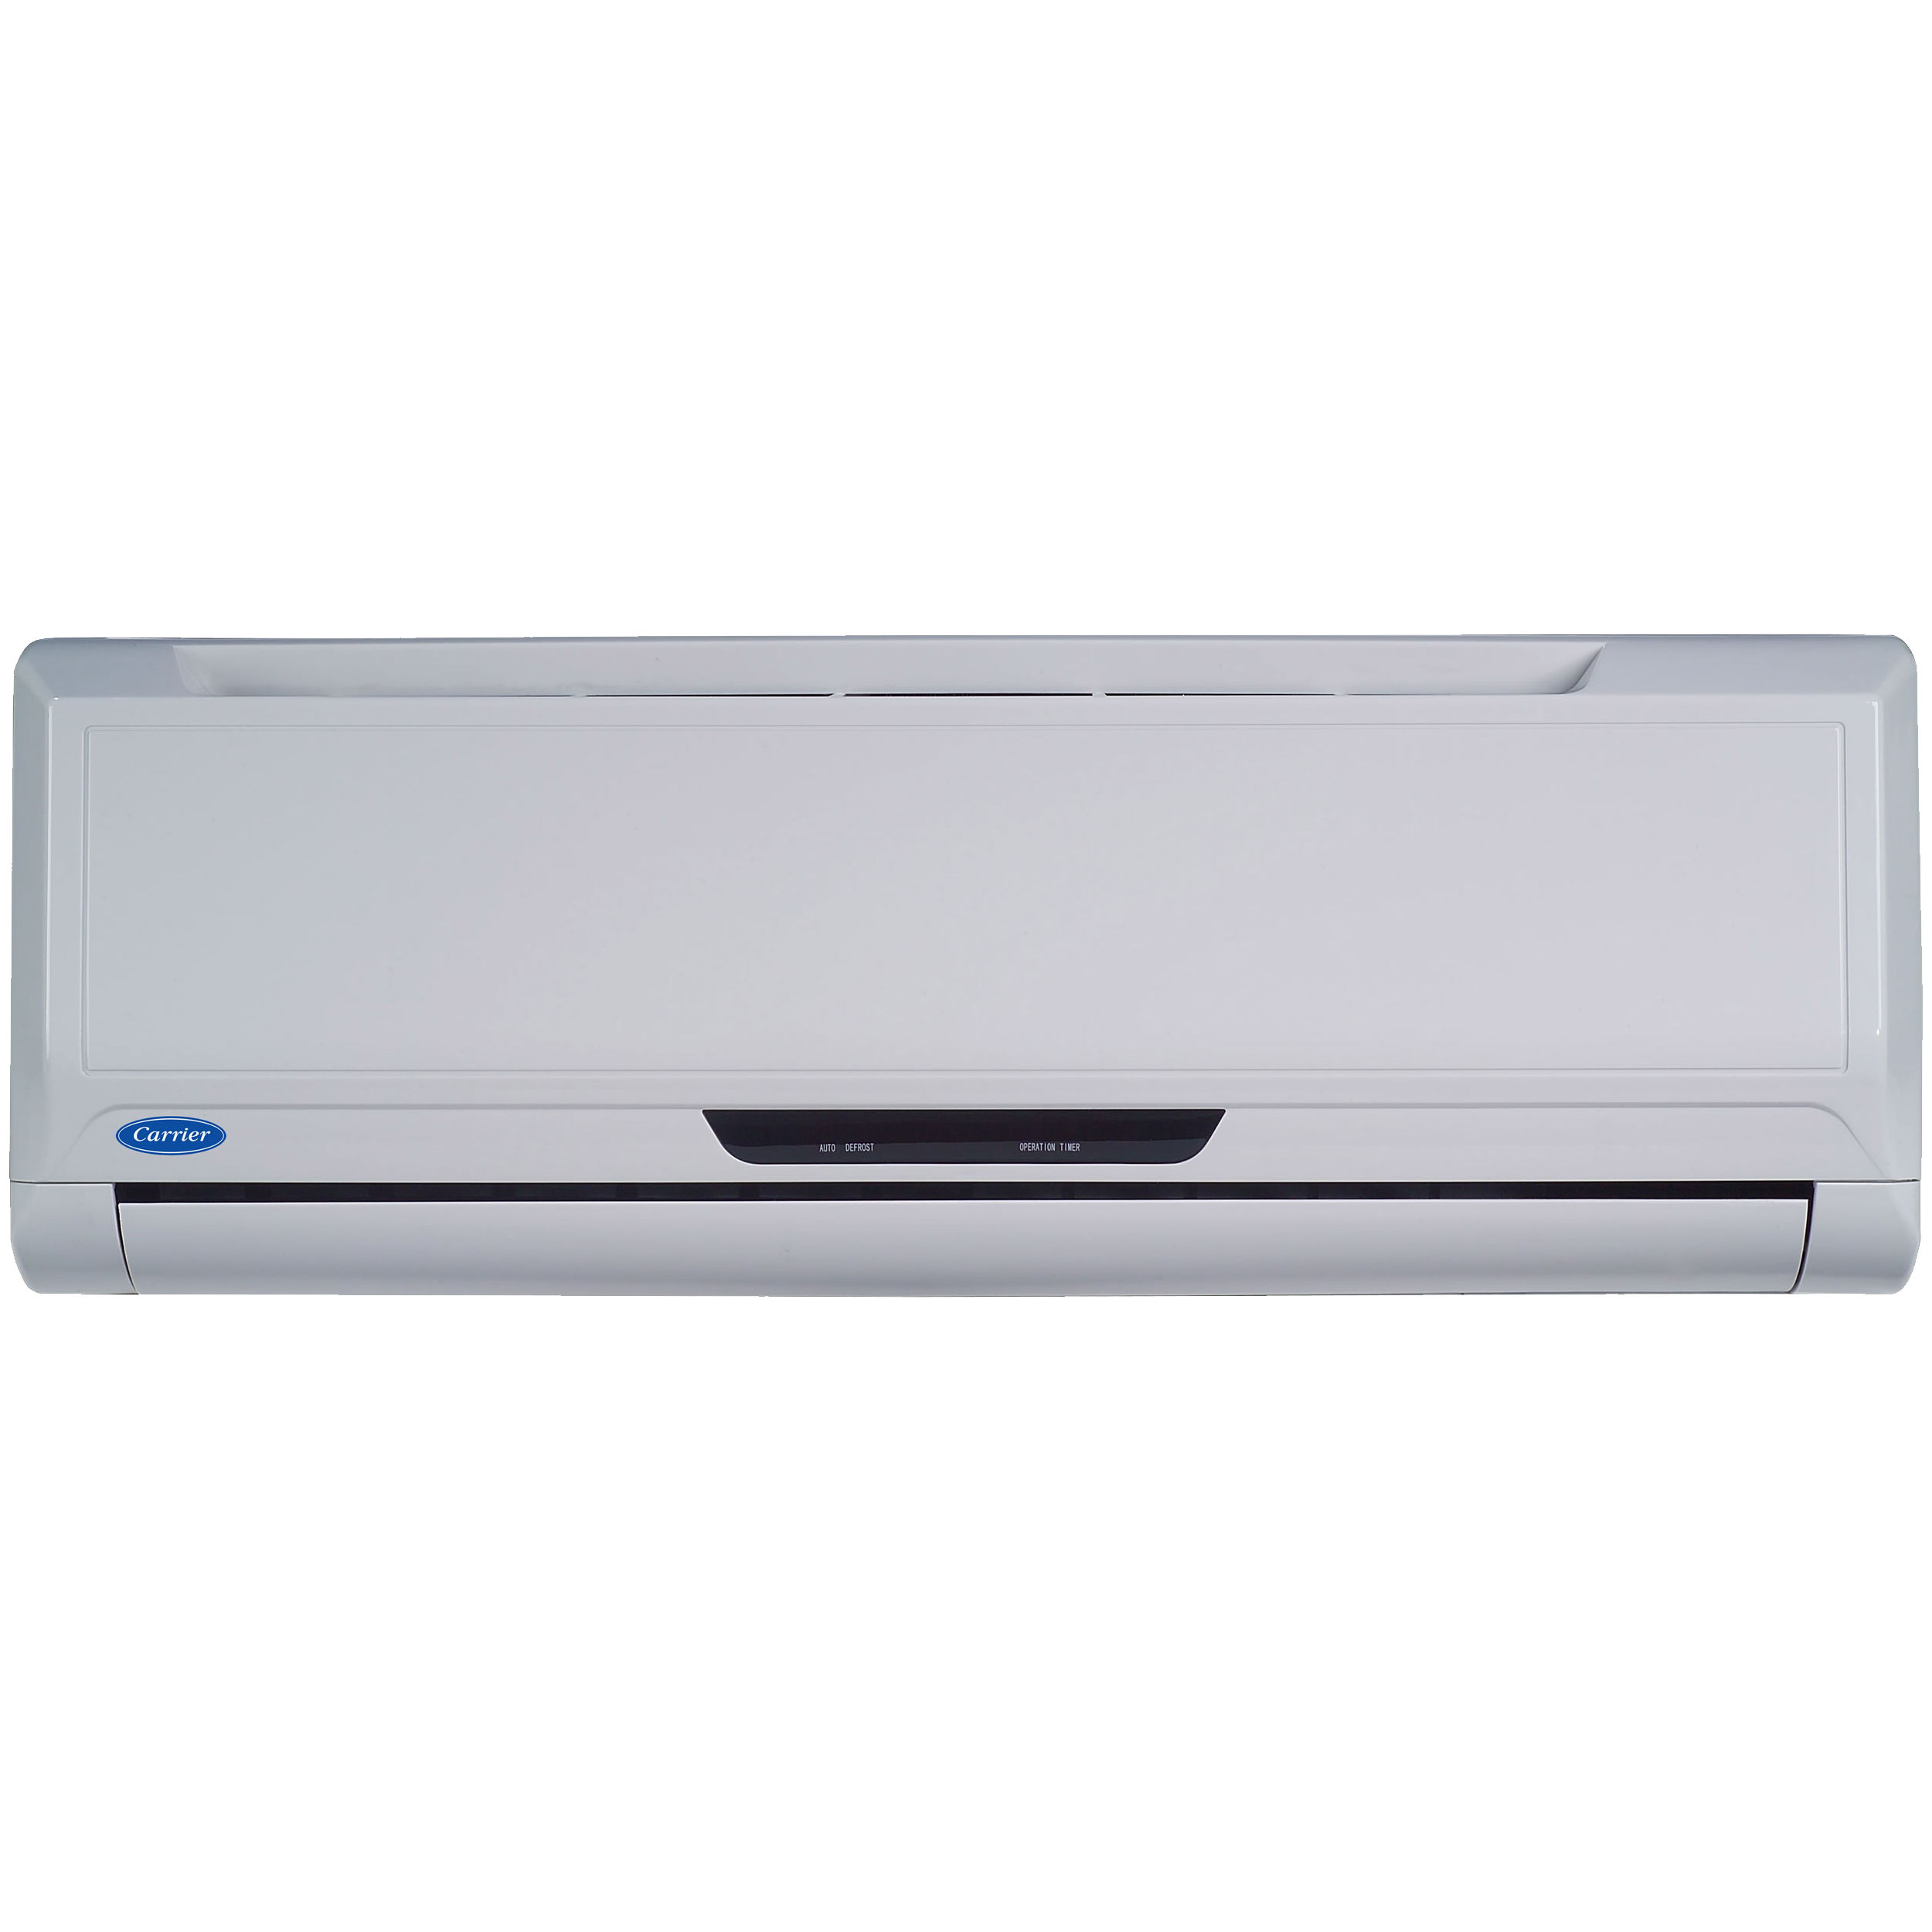 Air Conditioner Transparent Image